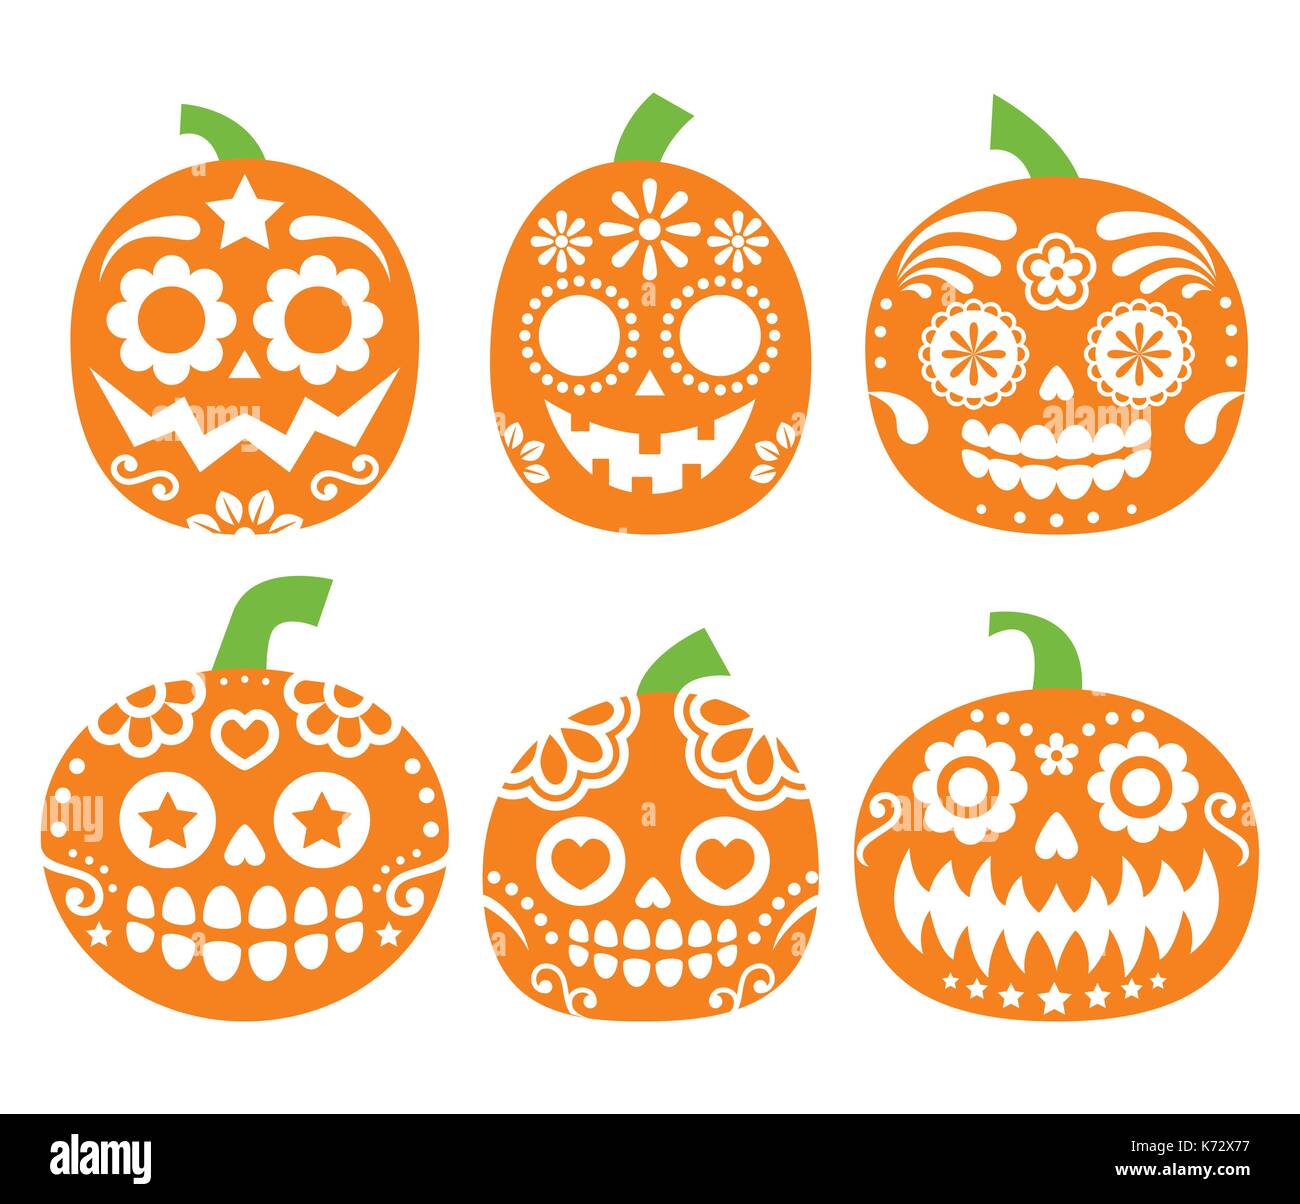 Zucchero messicano cranio vector seamless pattern sul nero, Halloween Candy bianco teschi sfondo, il giorno dei morti la celebrazione, design calavera Illustrazione Vettoriale